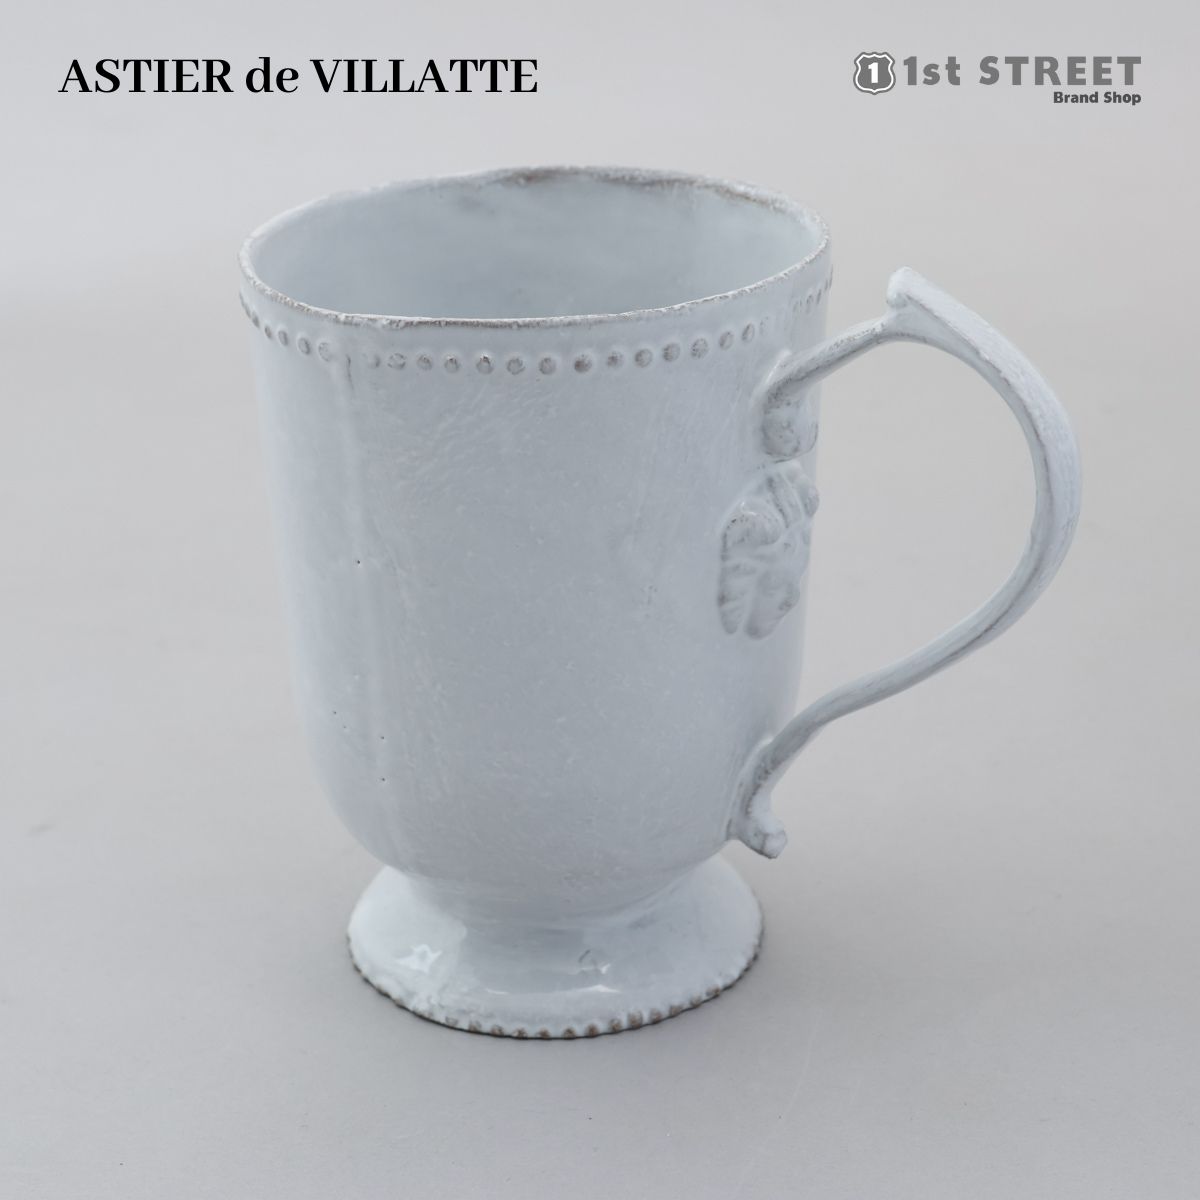 アスティエ・ド・ヴィラット ASTIER de VILLATTE マグカップ コップ コーヒーカップ カップ 食器 洋食器 陶器 おしゃれ ギフト TSSALX3 ALEXANDRE